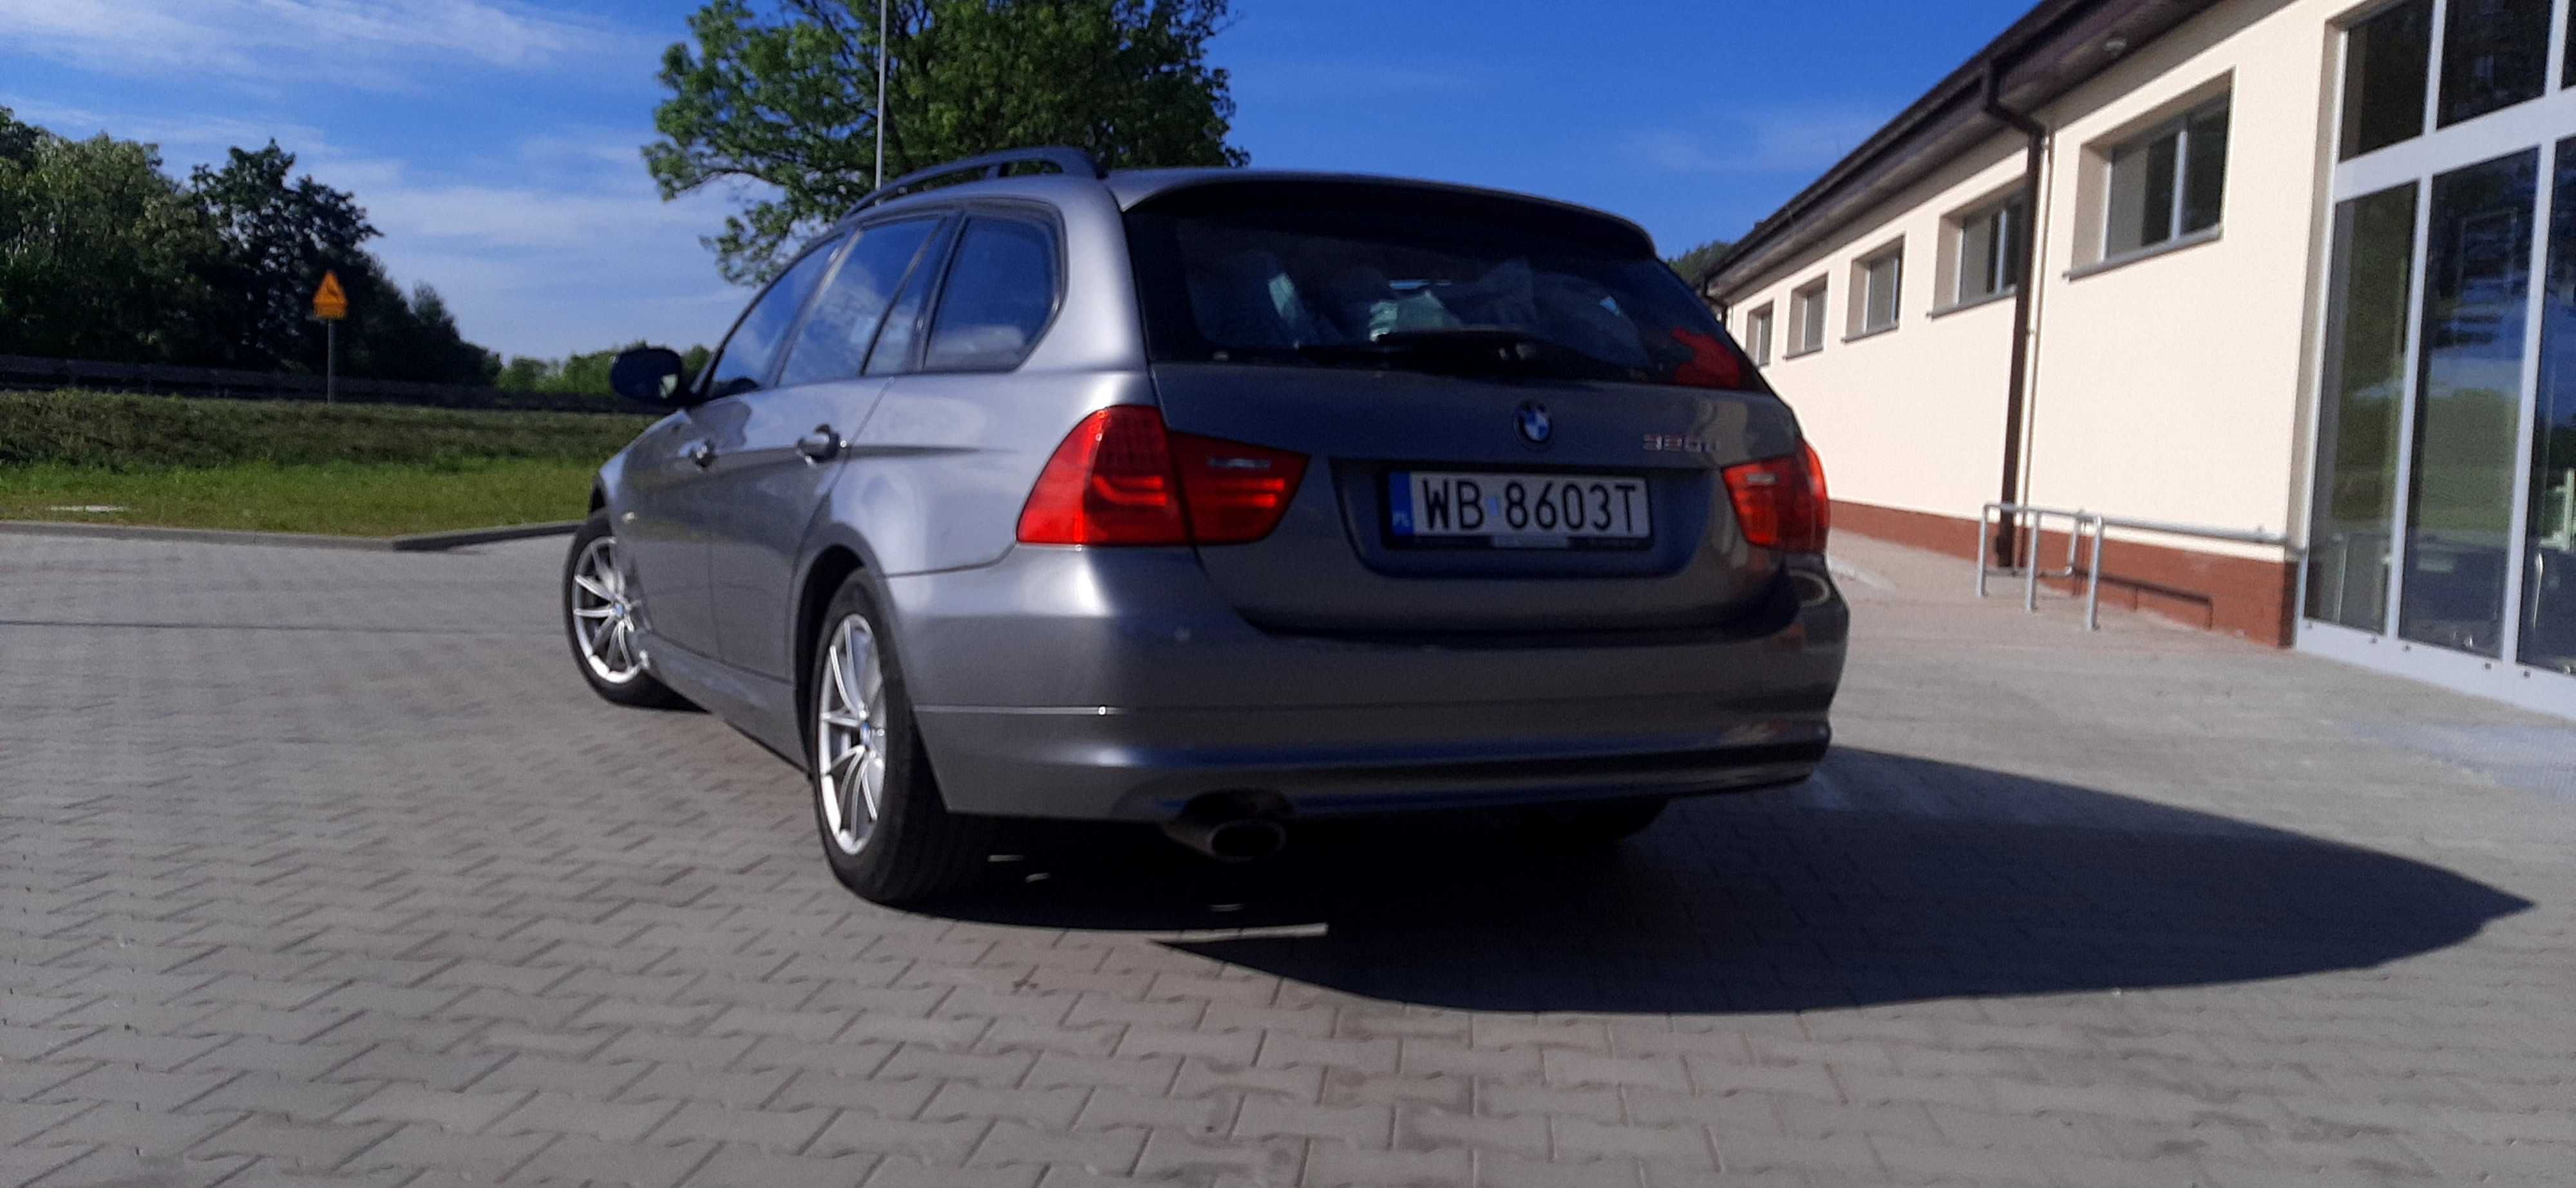 Sprzedam lub  zamienie  BMW E91 2011  stan bdb oferta prywatna